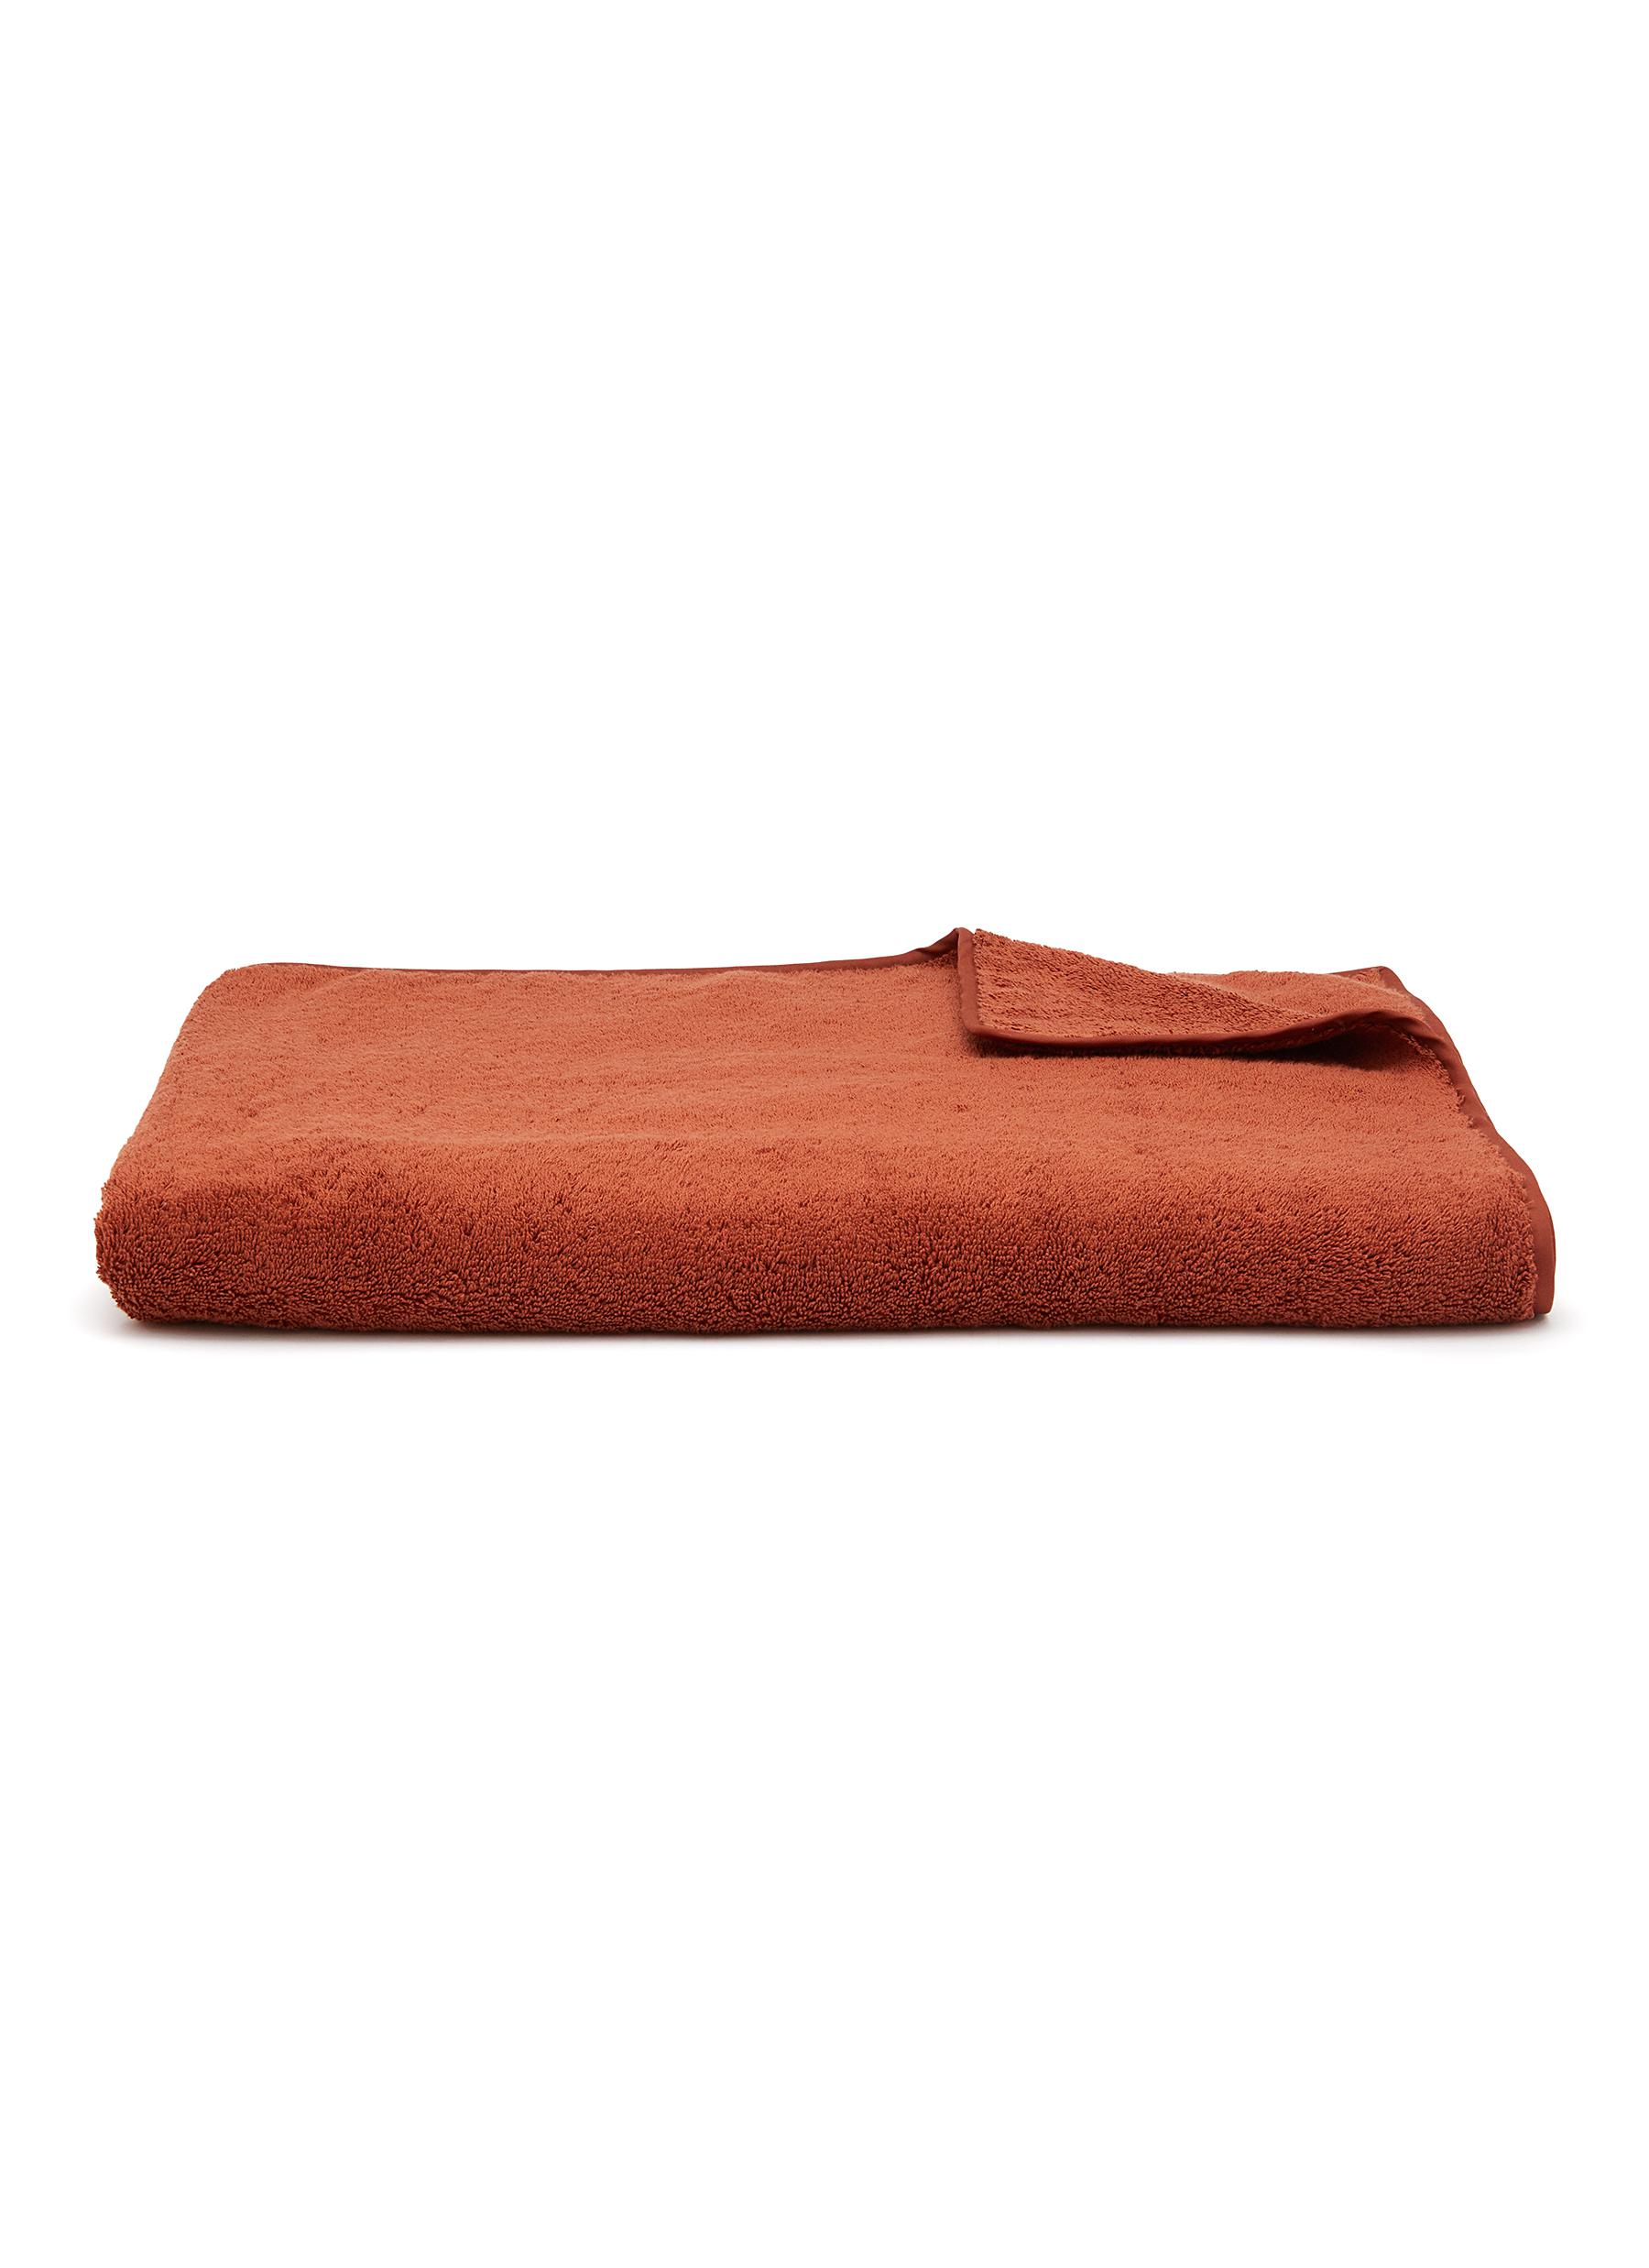 Unito Cotton Bath Sheet - Sunset Red